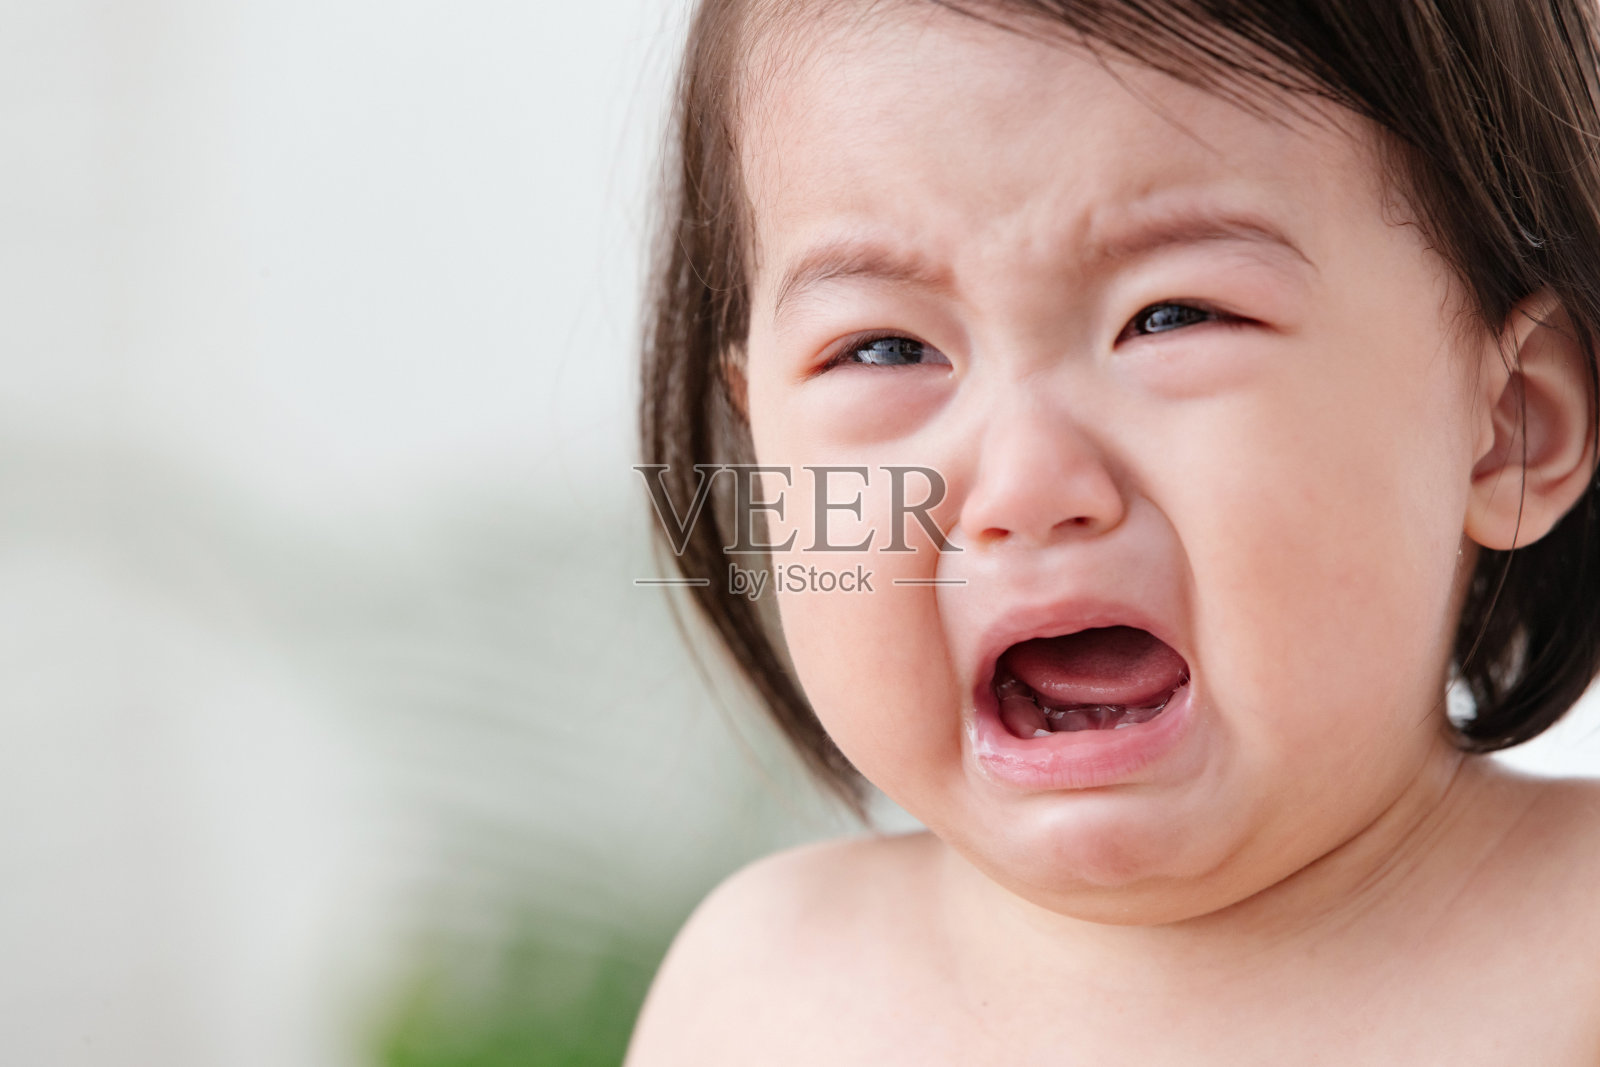 那个婴儿张着嘴在哭照片摄影图片